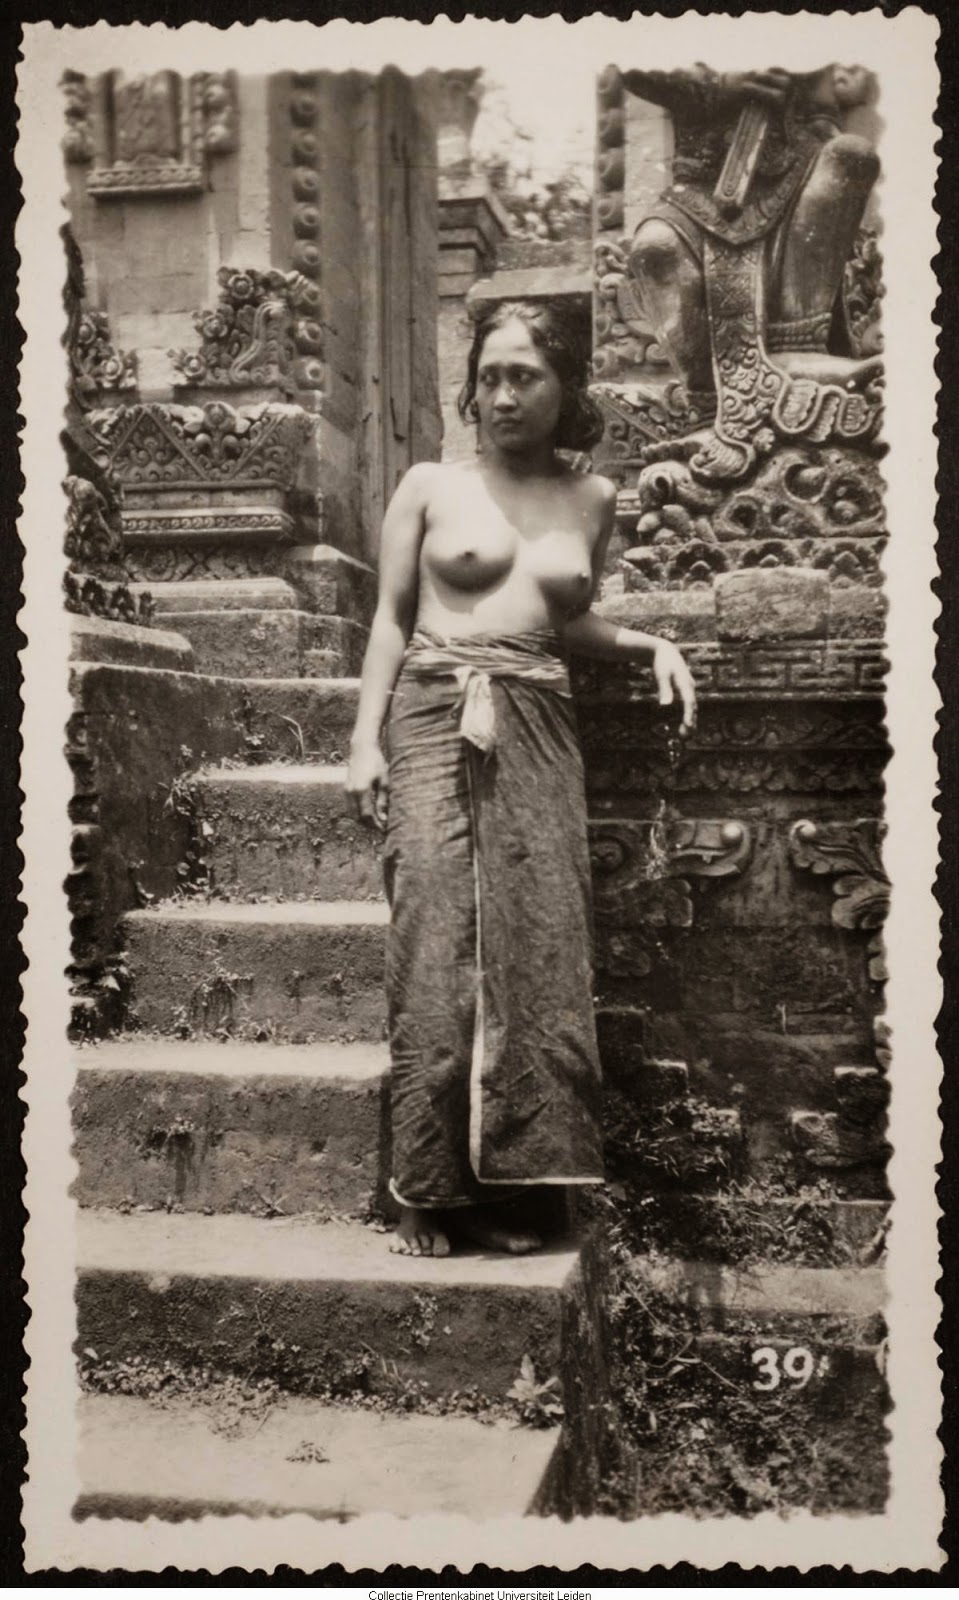 kumpulan-foto-gadis-bali-tempoe-doeloe-telanjang-dada-tahun-1910-1930-balinese-topless-girls-vintage-photography-6